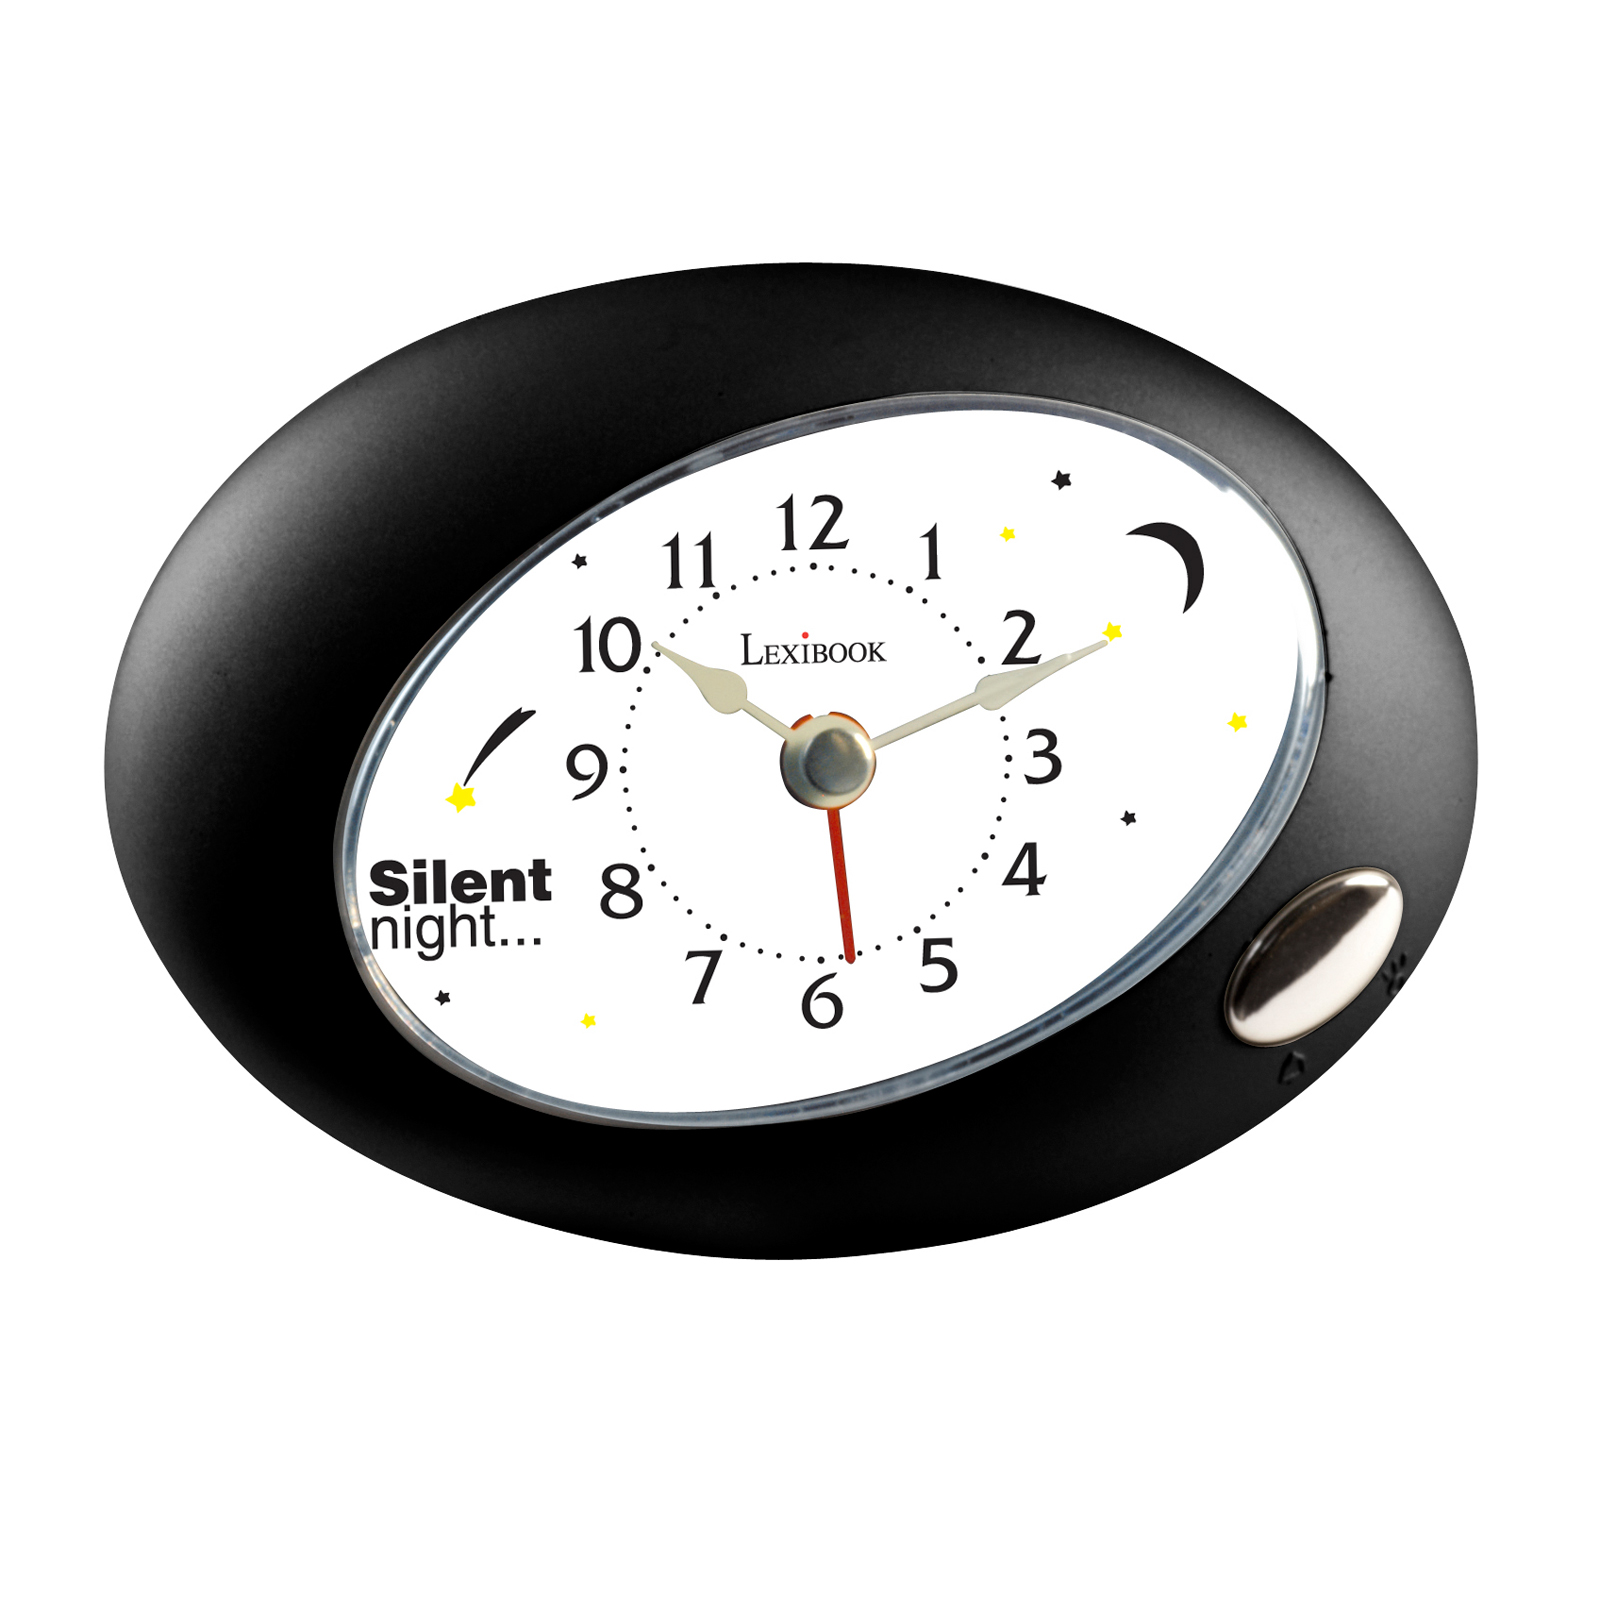 AL130 Ellipse Alarm Clock